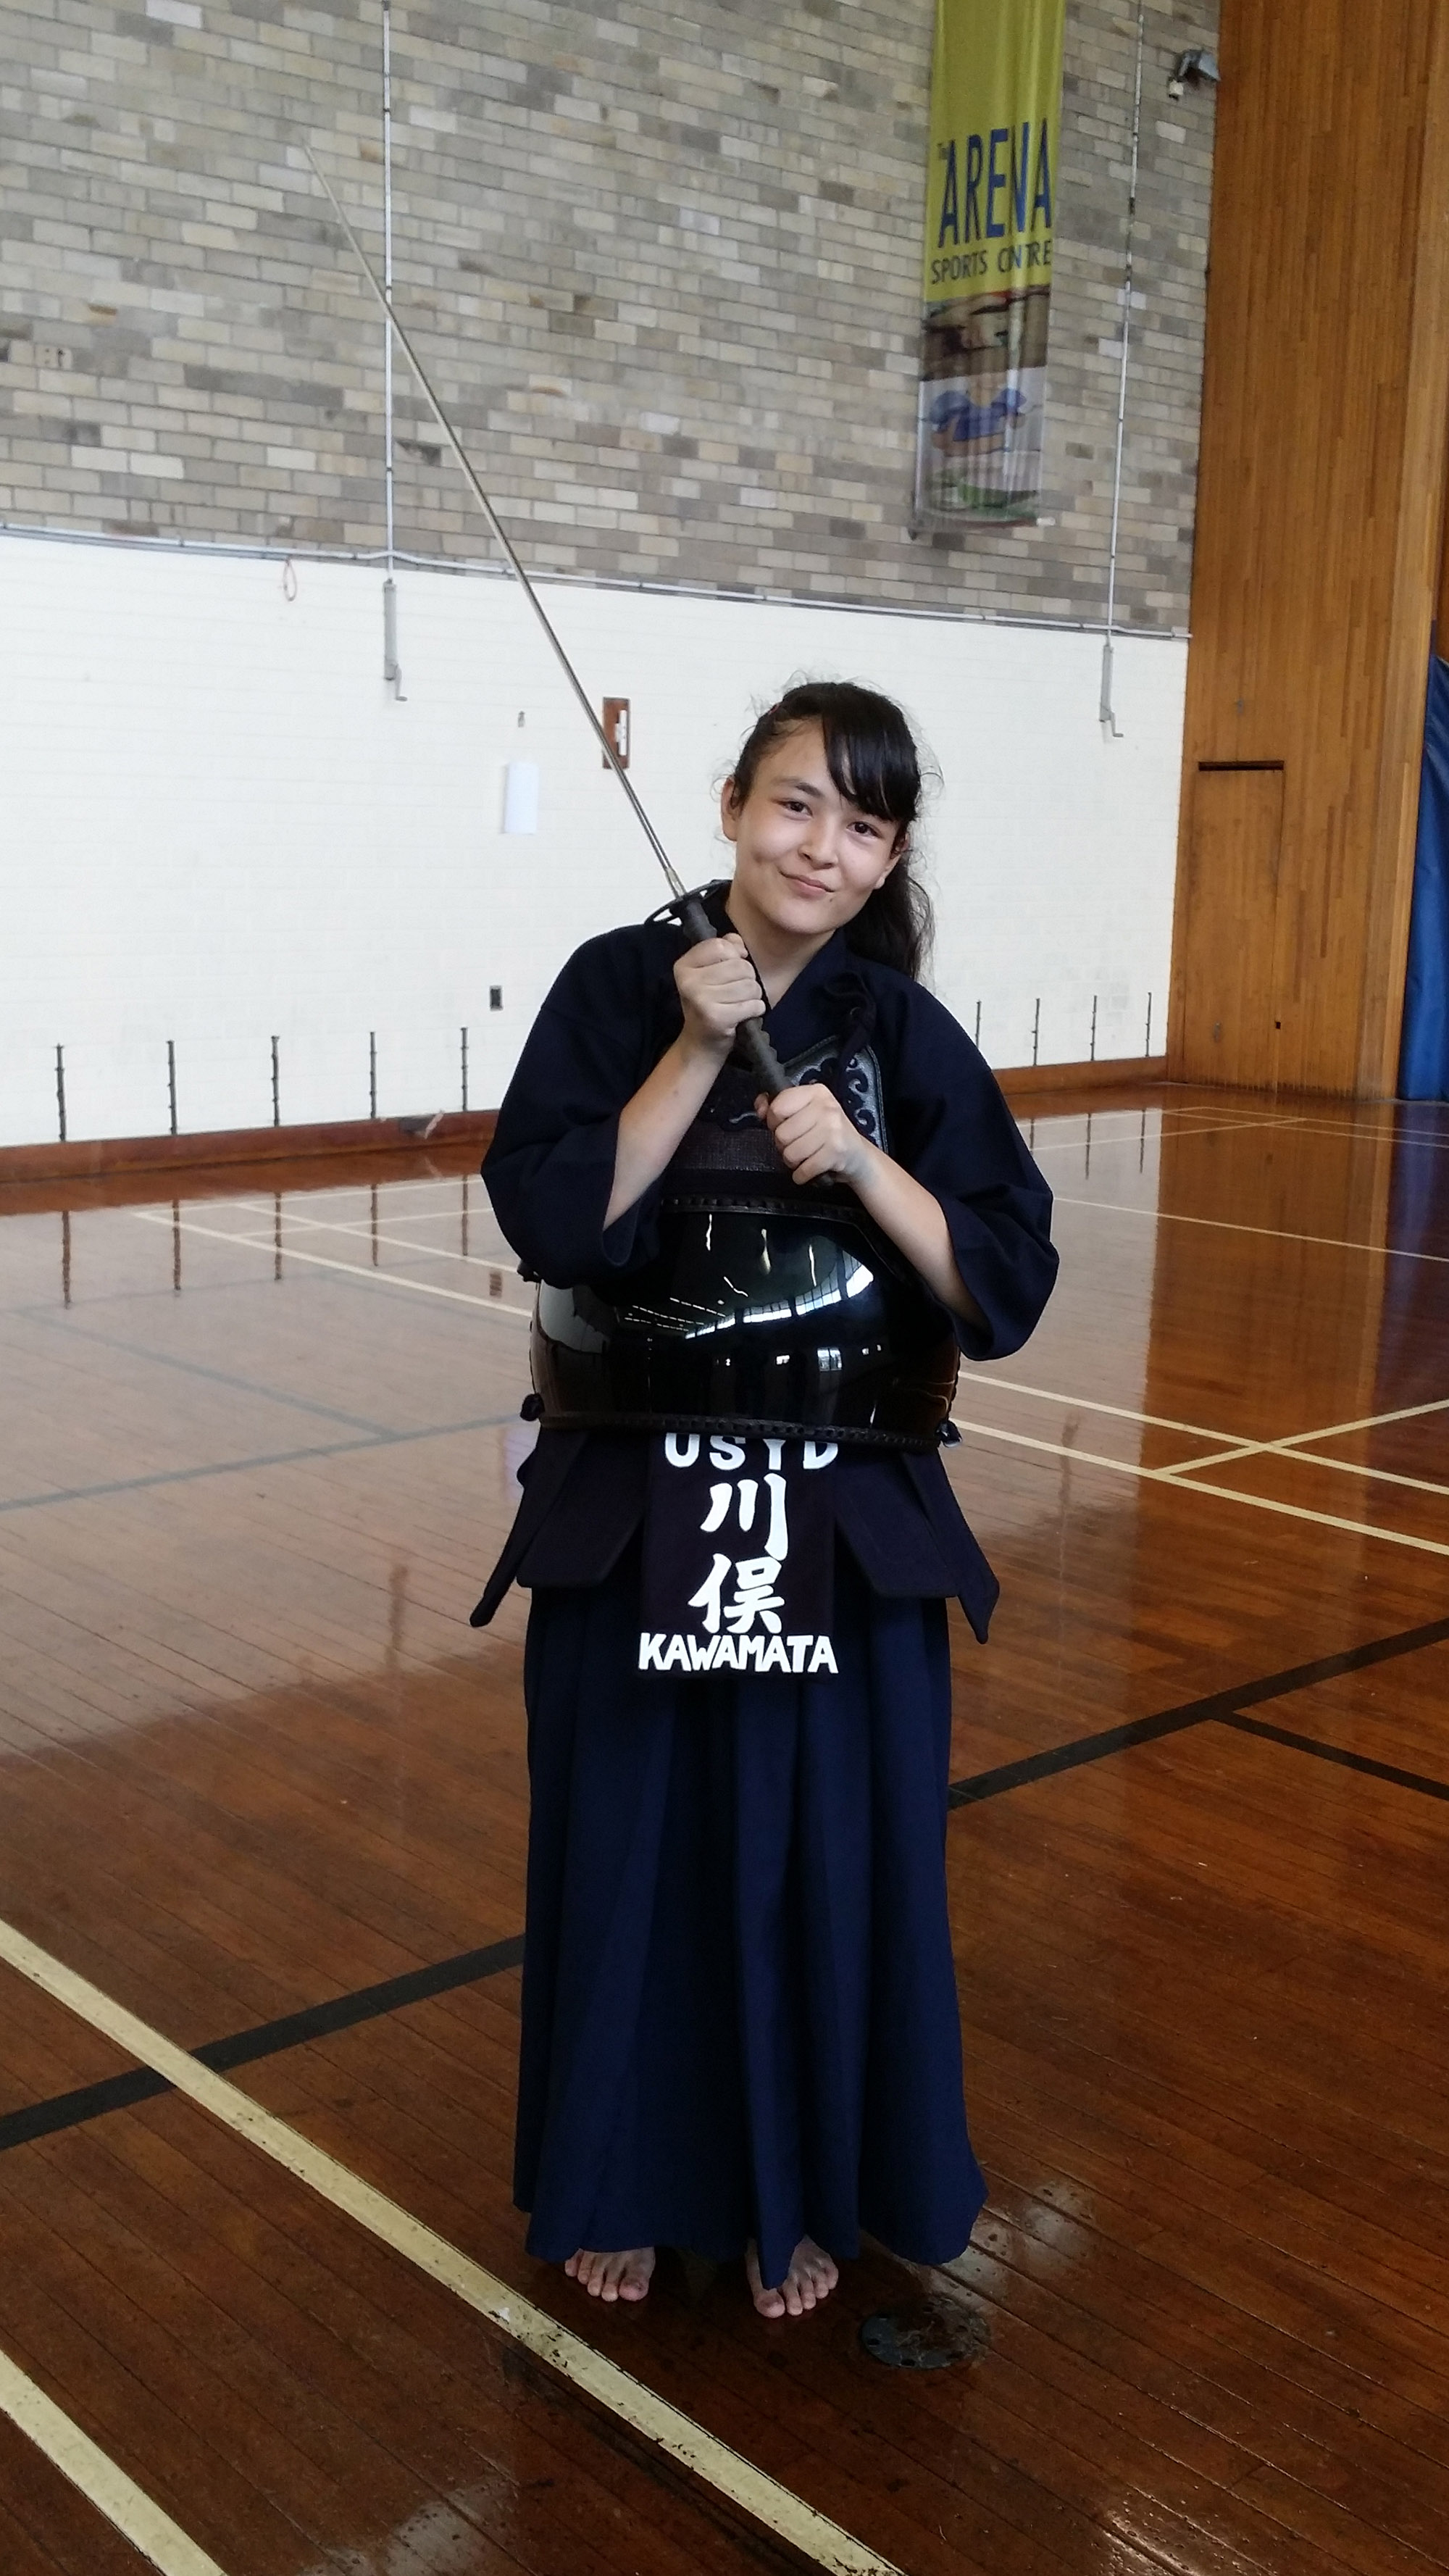 O-Week | Sydney Uni Kendo Club